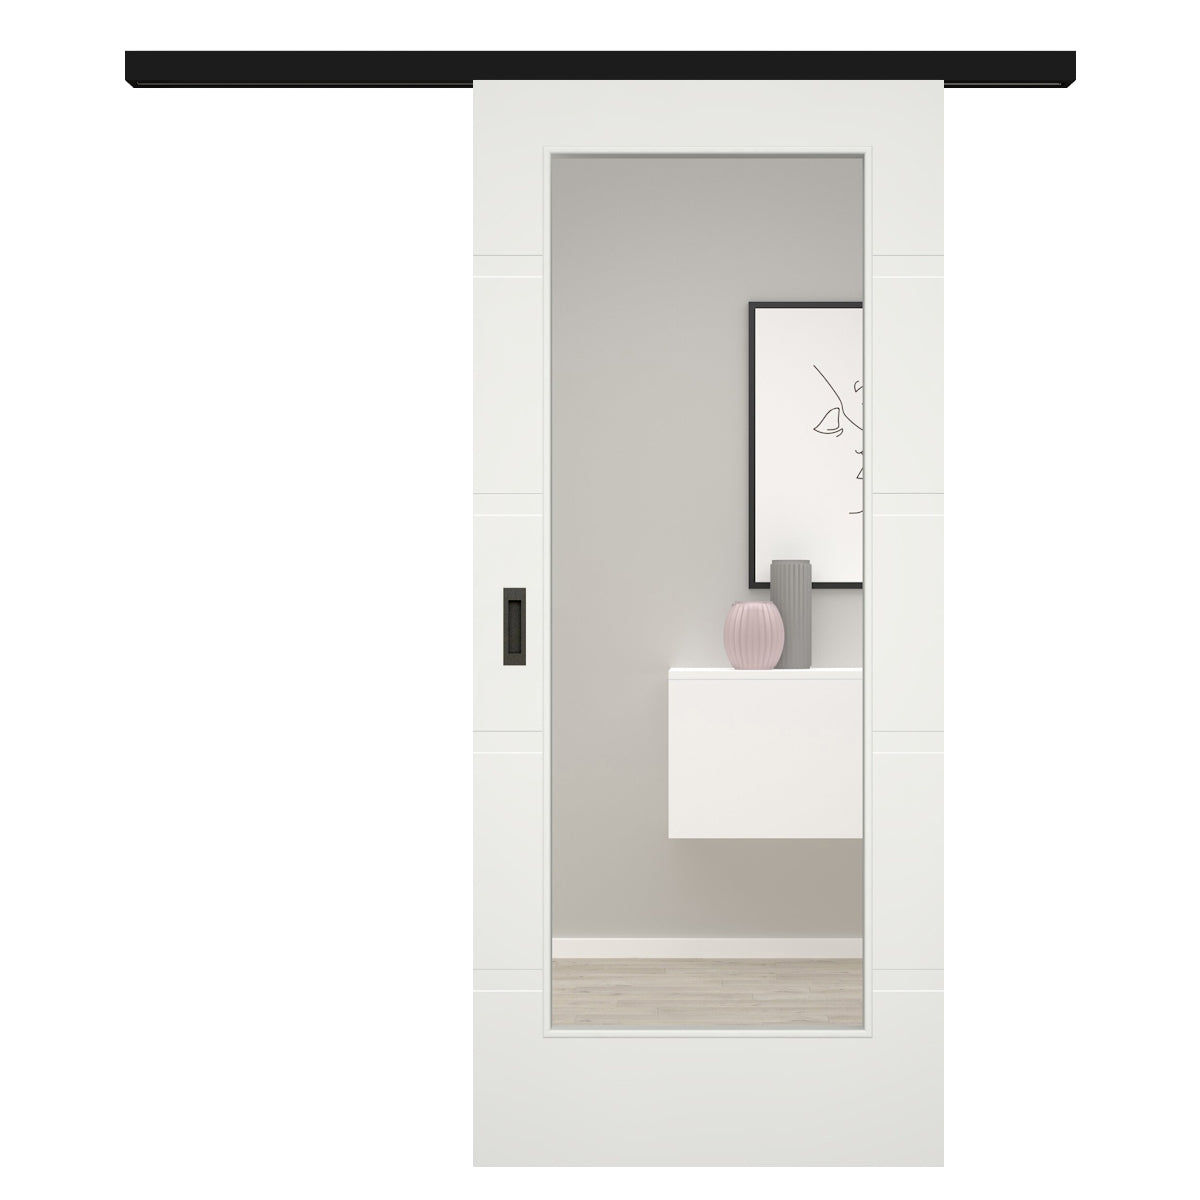 Schiebetür für Set mit schwarzem Laufkasten mit Lichtausschnitt soft-weiß 4 breite Rillen - Modell Designtür QB41LA